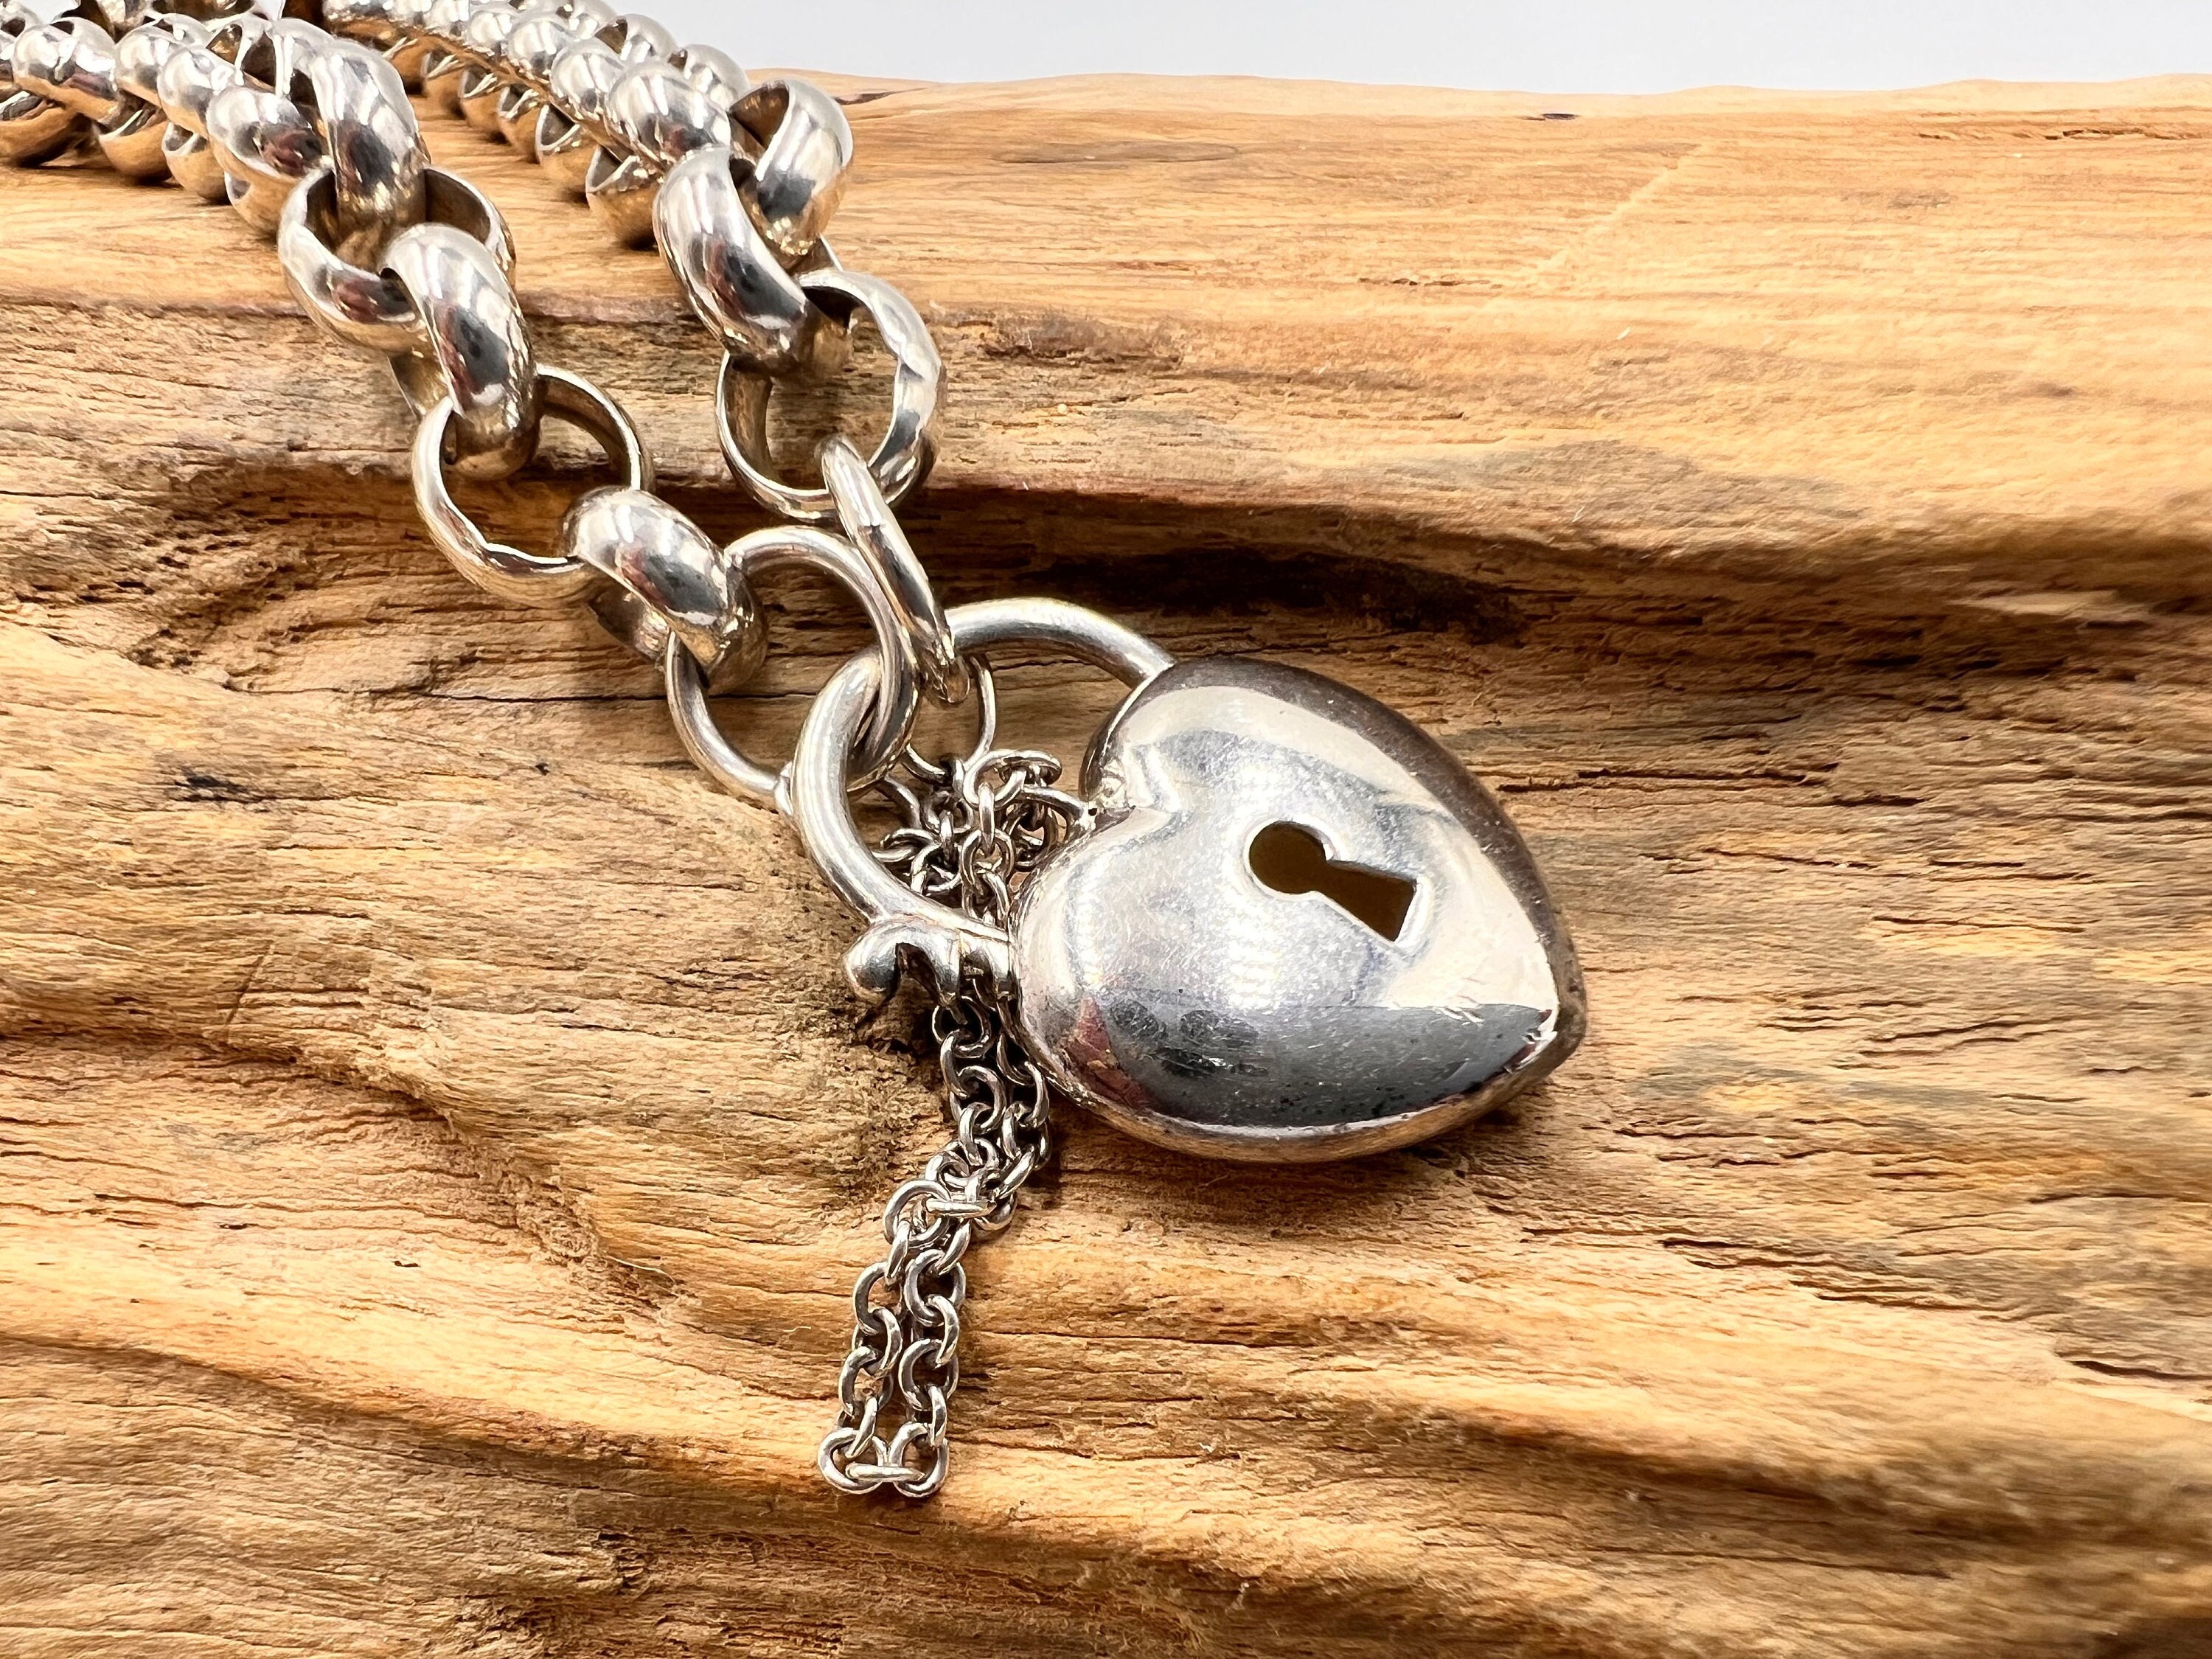 Sterling Silver Puffed Heart Locket Bracelet with Keys 